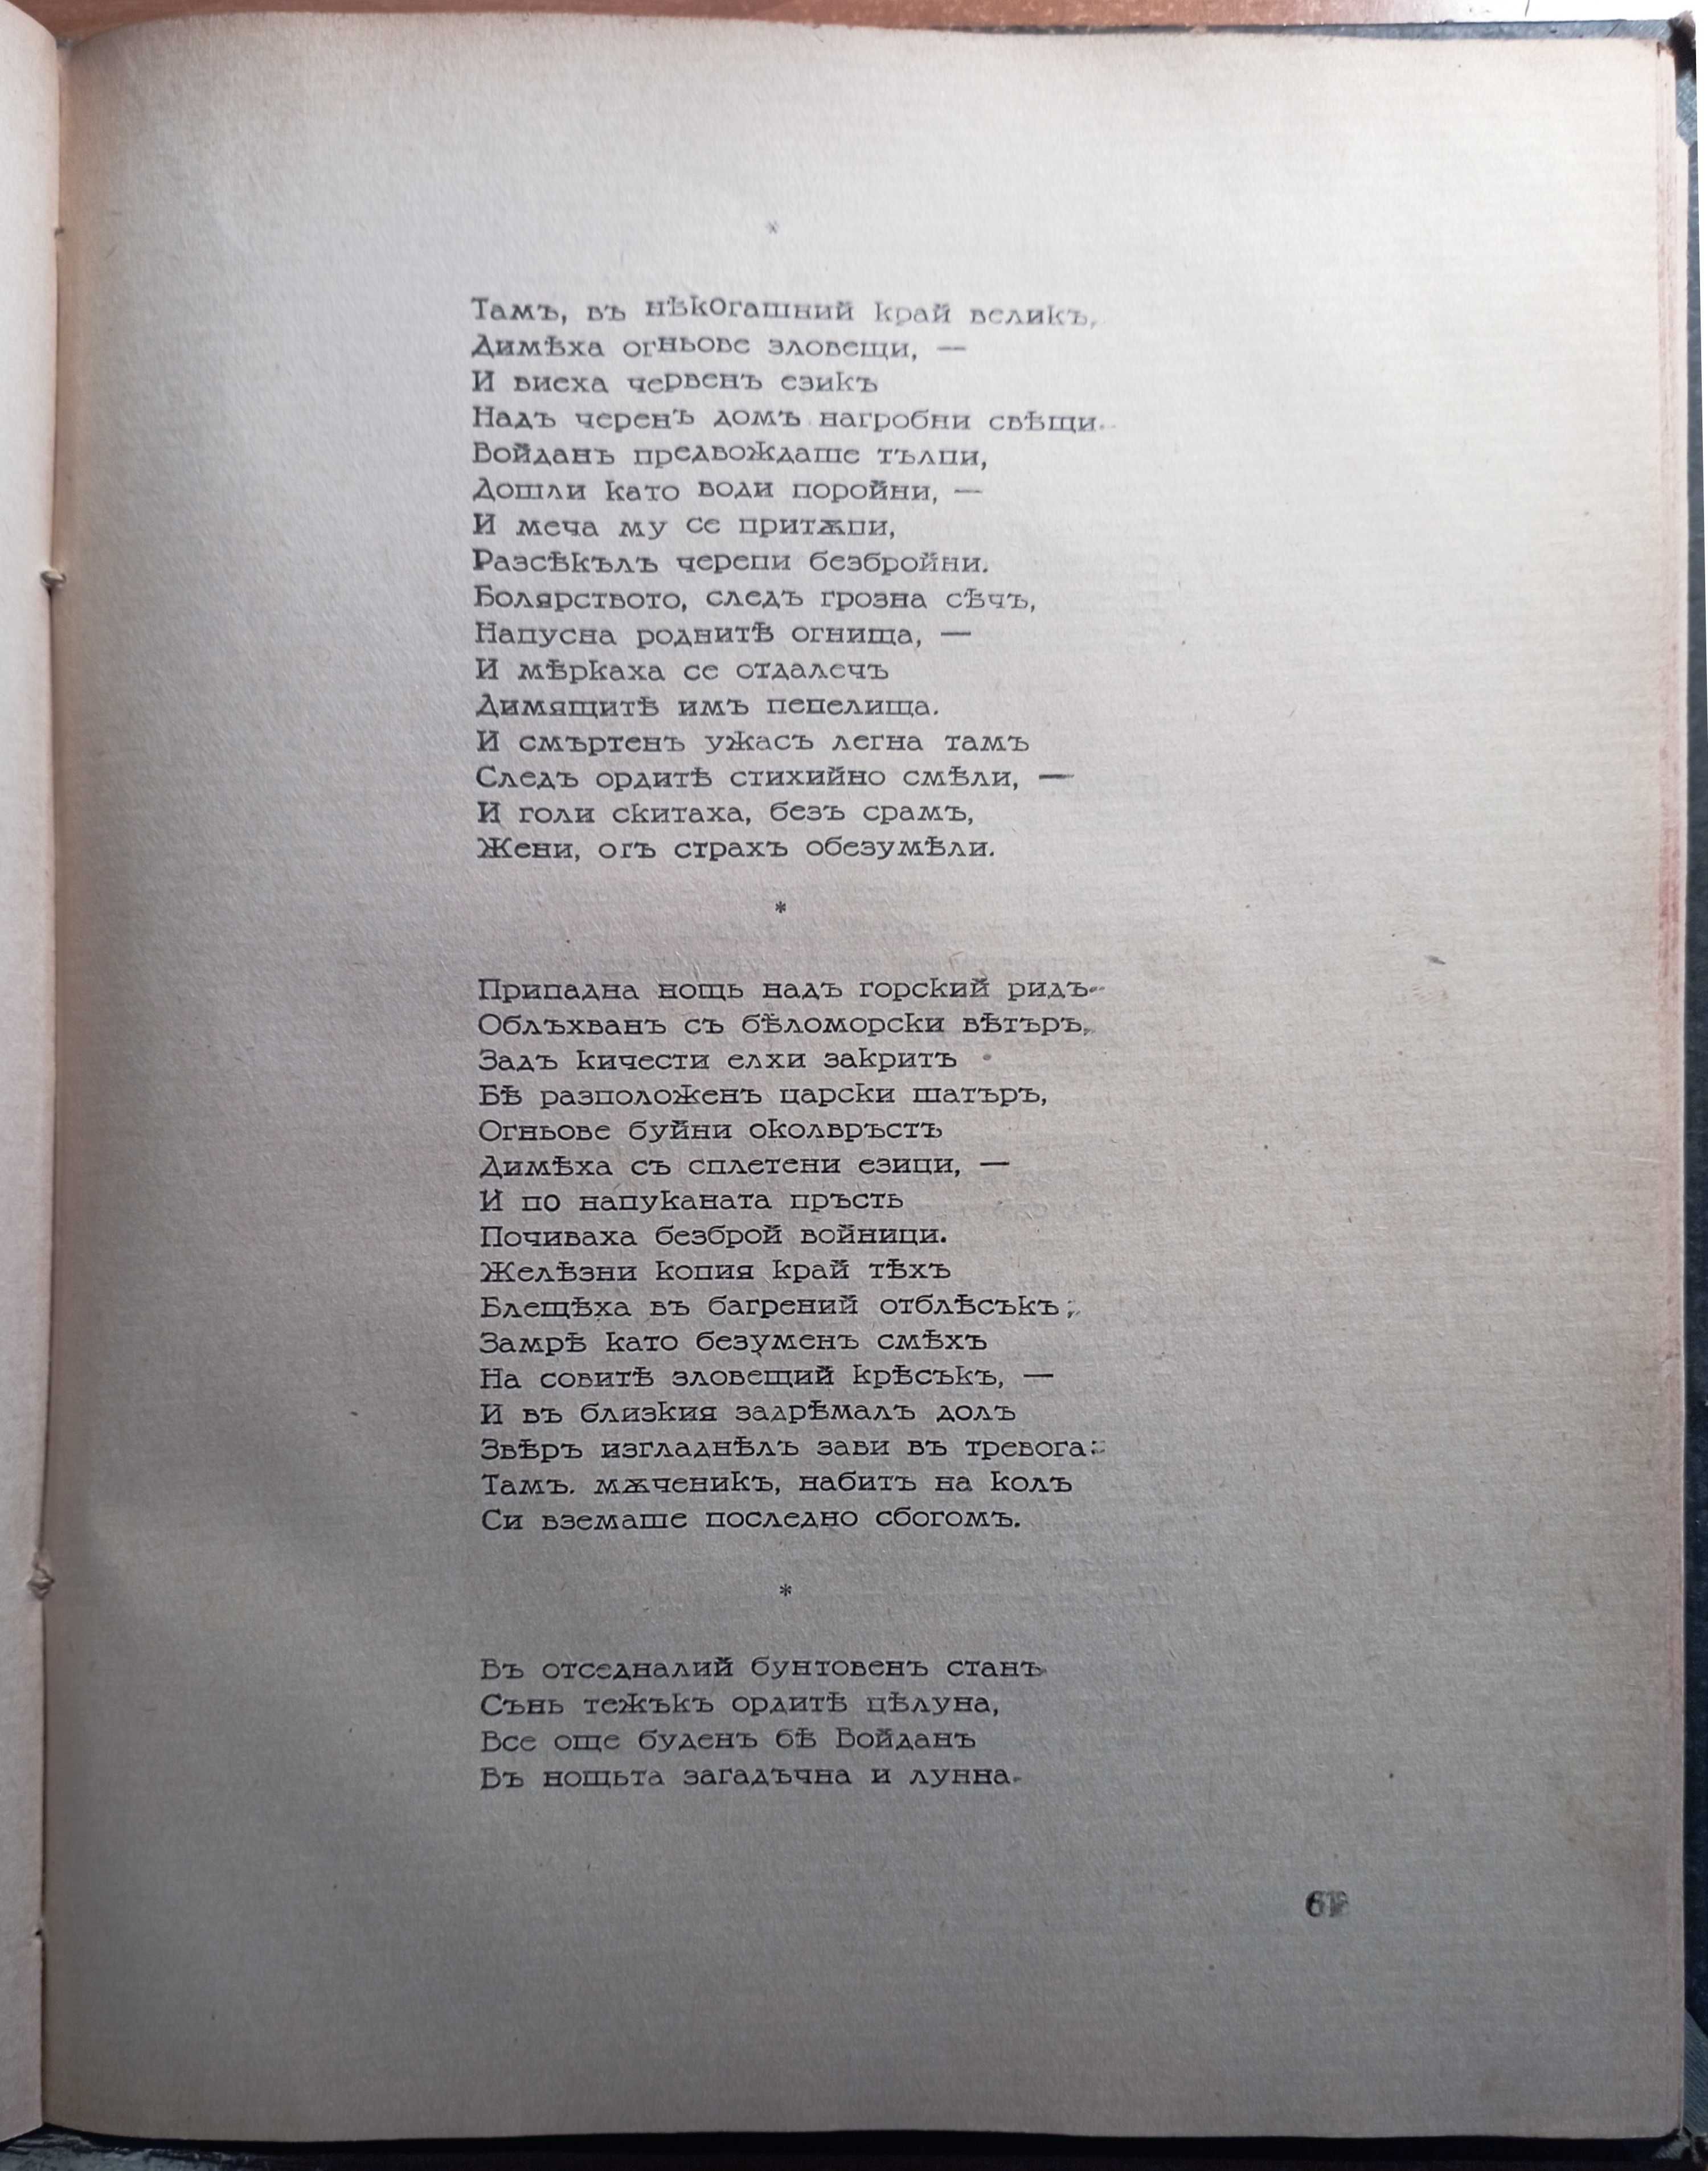 Слънцето на Багдад
Минко Неволин, 50г на българската журналистика 1894